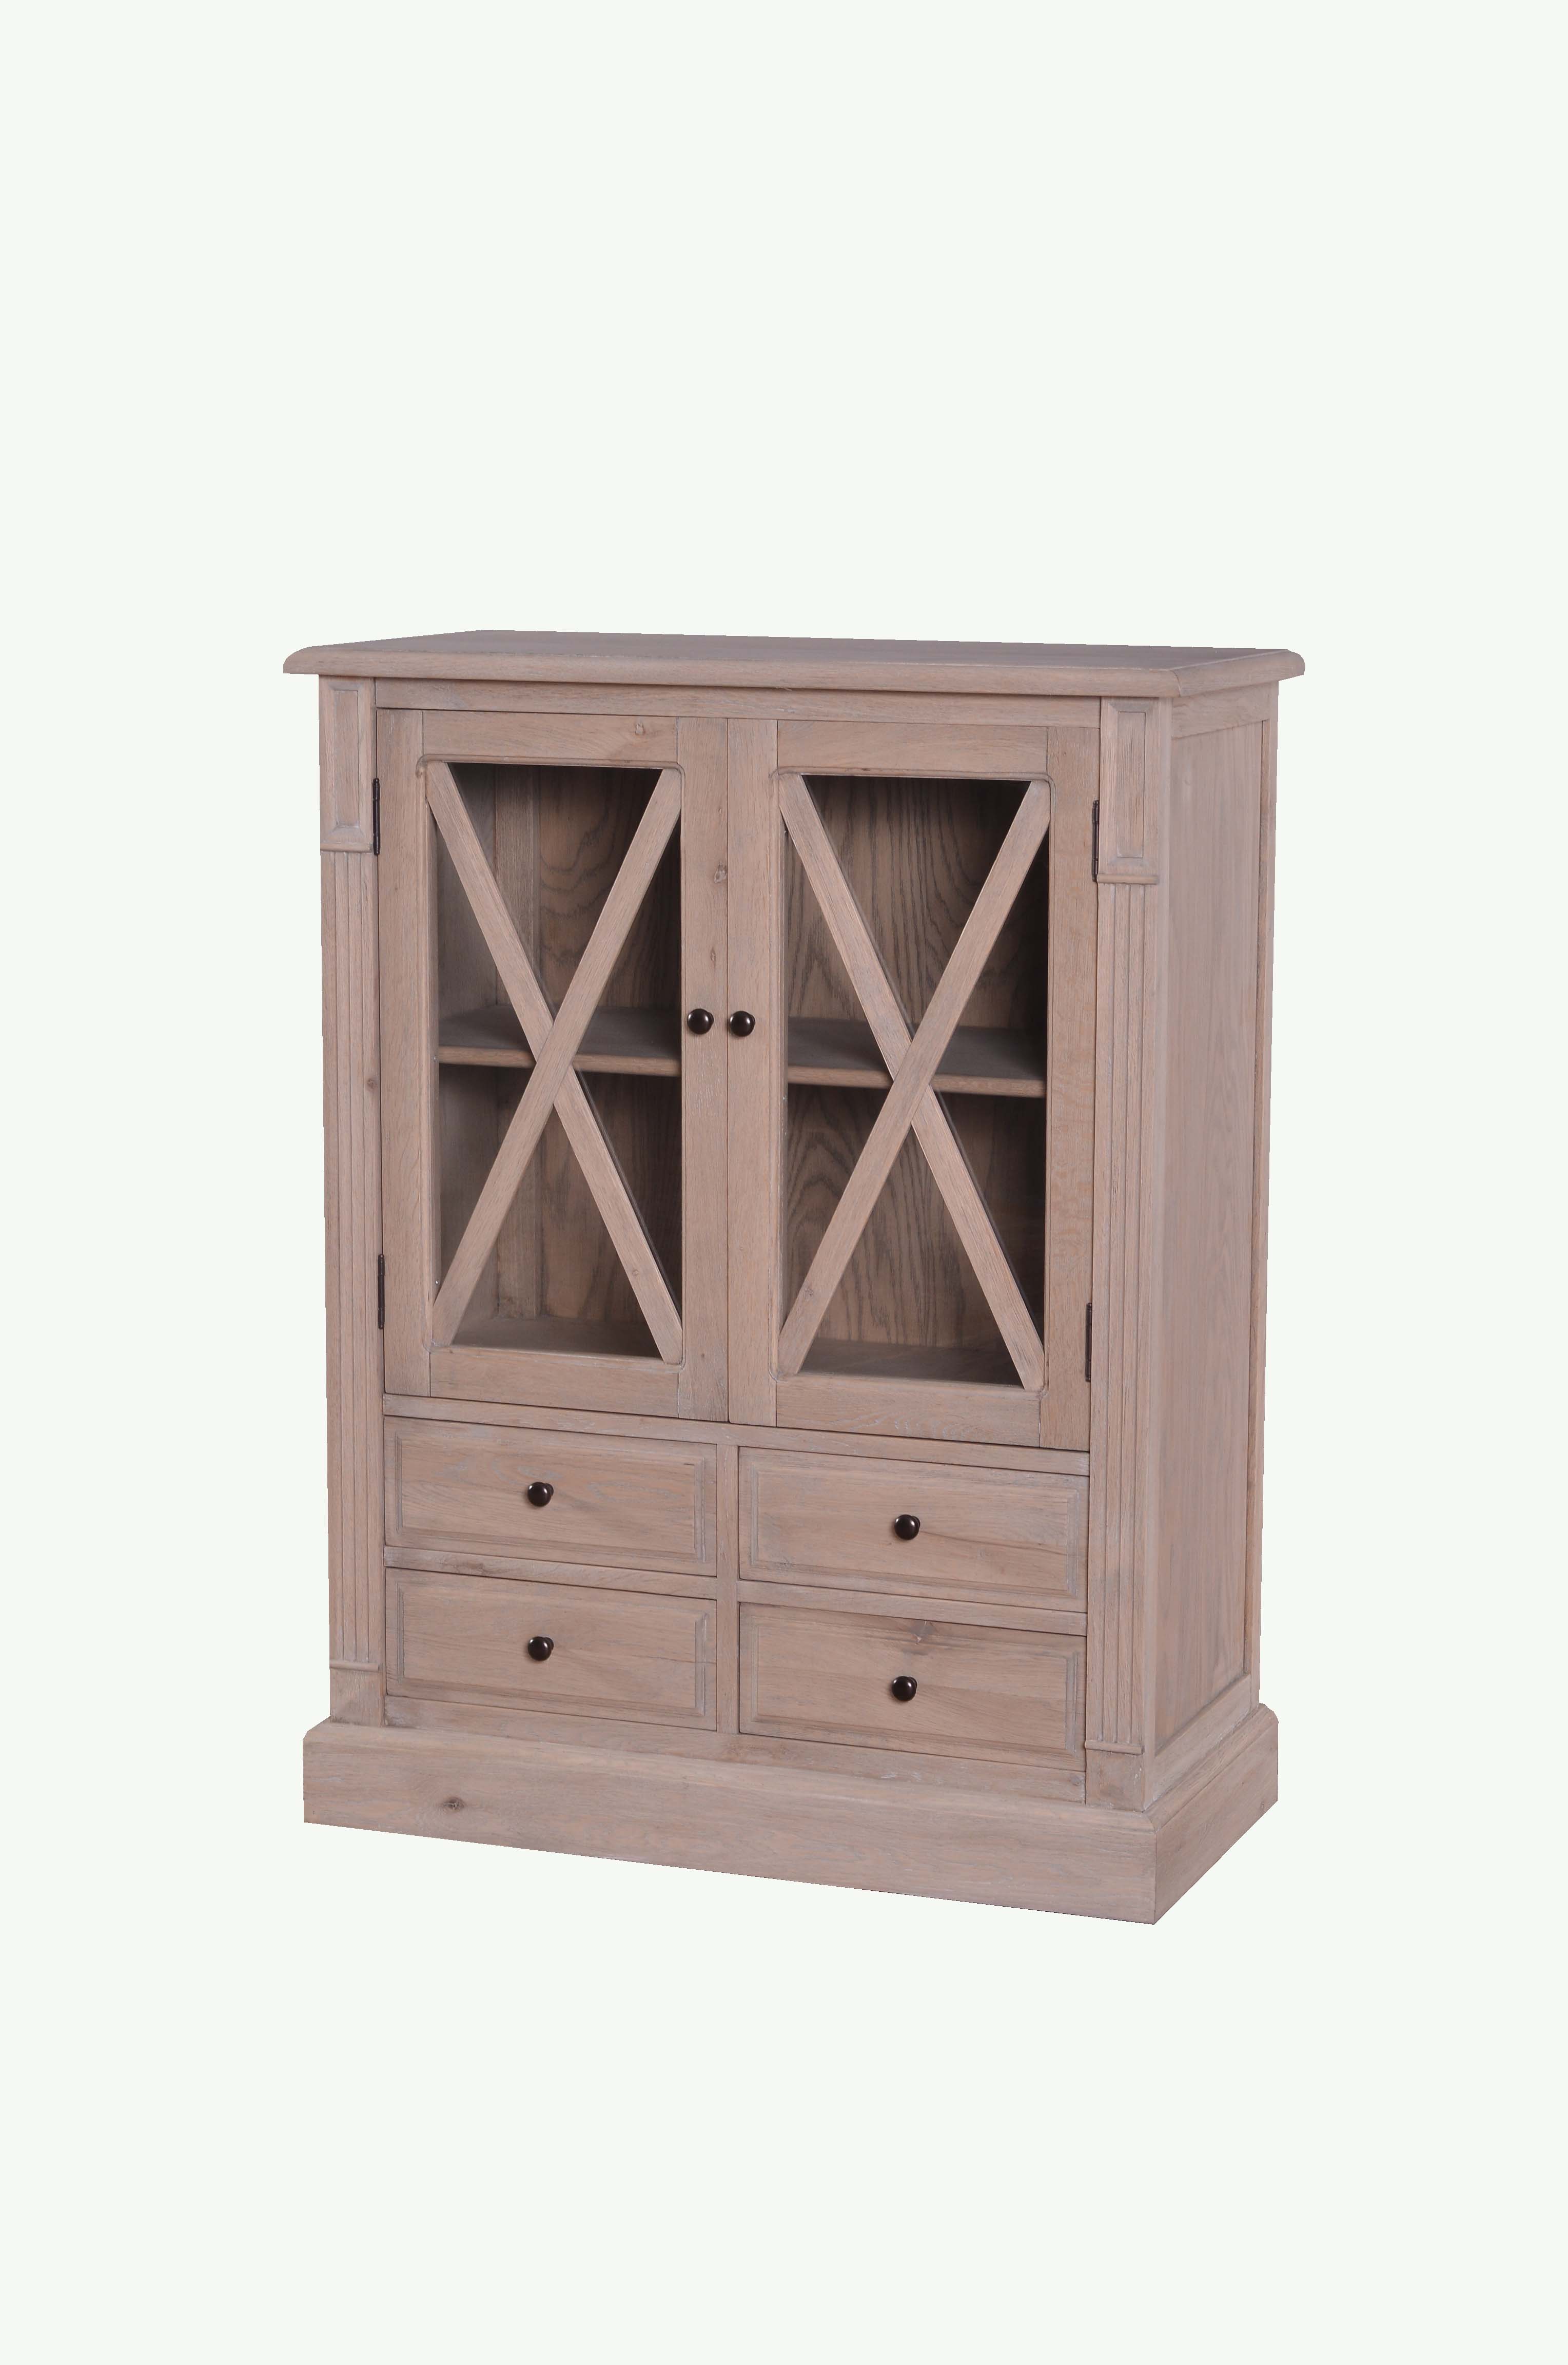 MD08-195-Oak veneer display cabinet